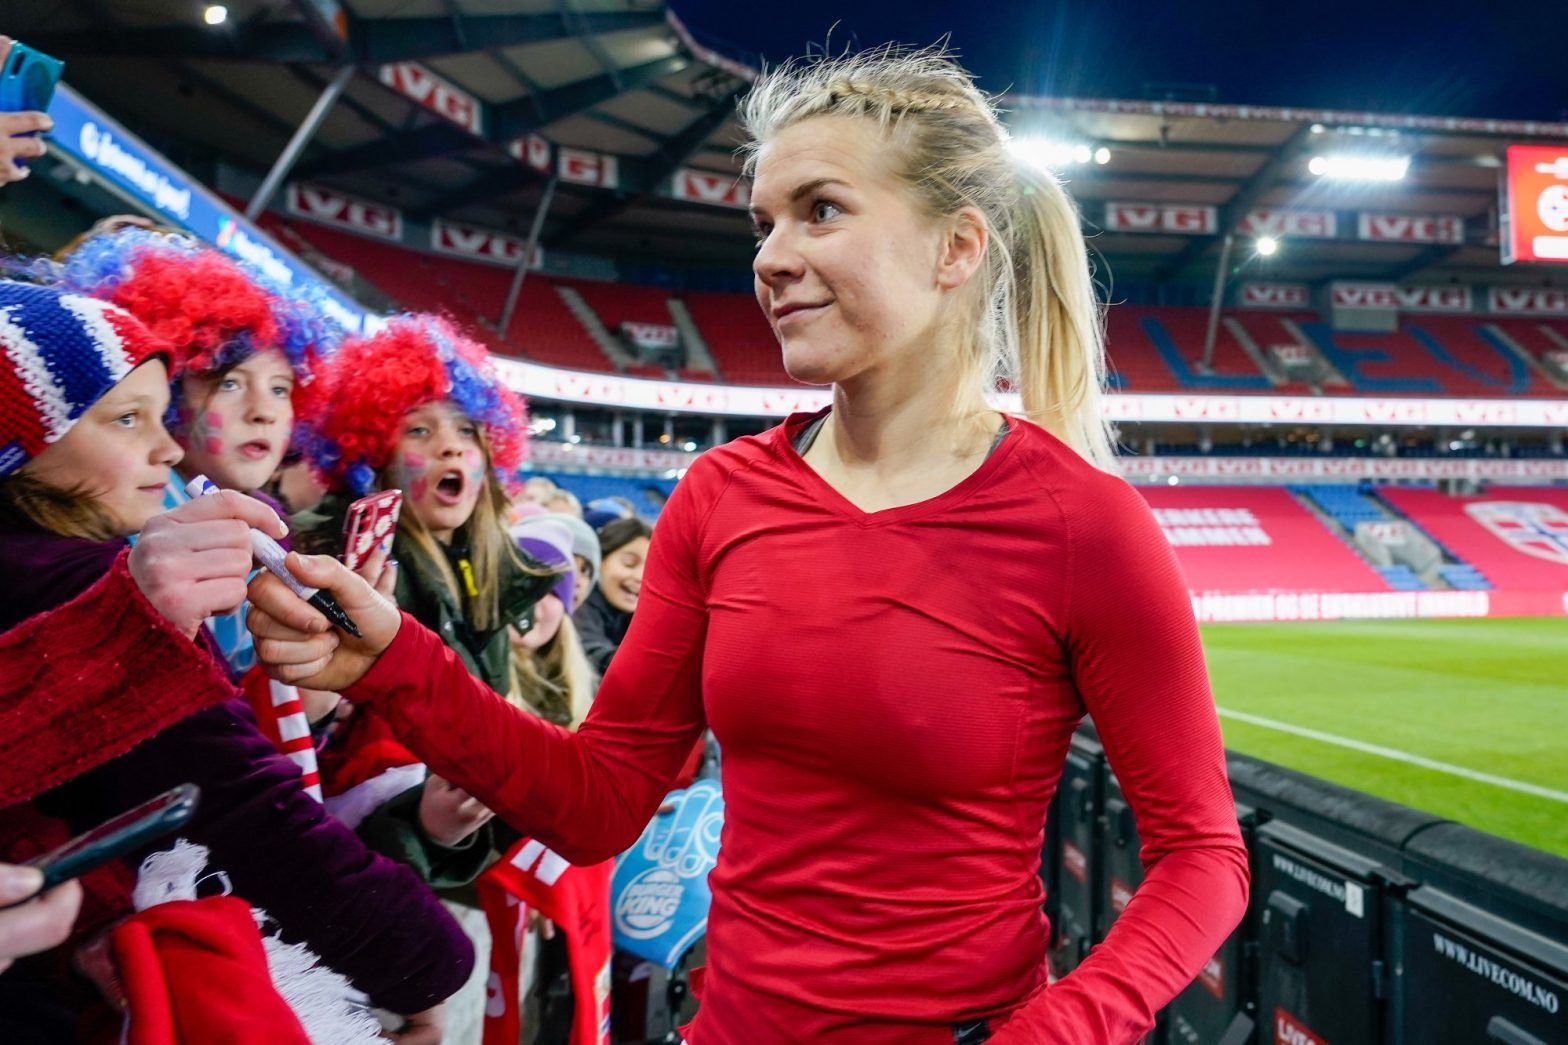 Football, Ada Hegerberg | The football star got married